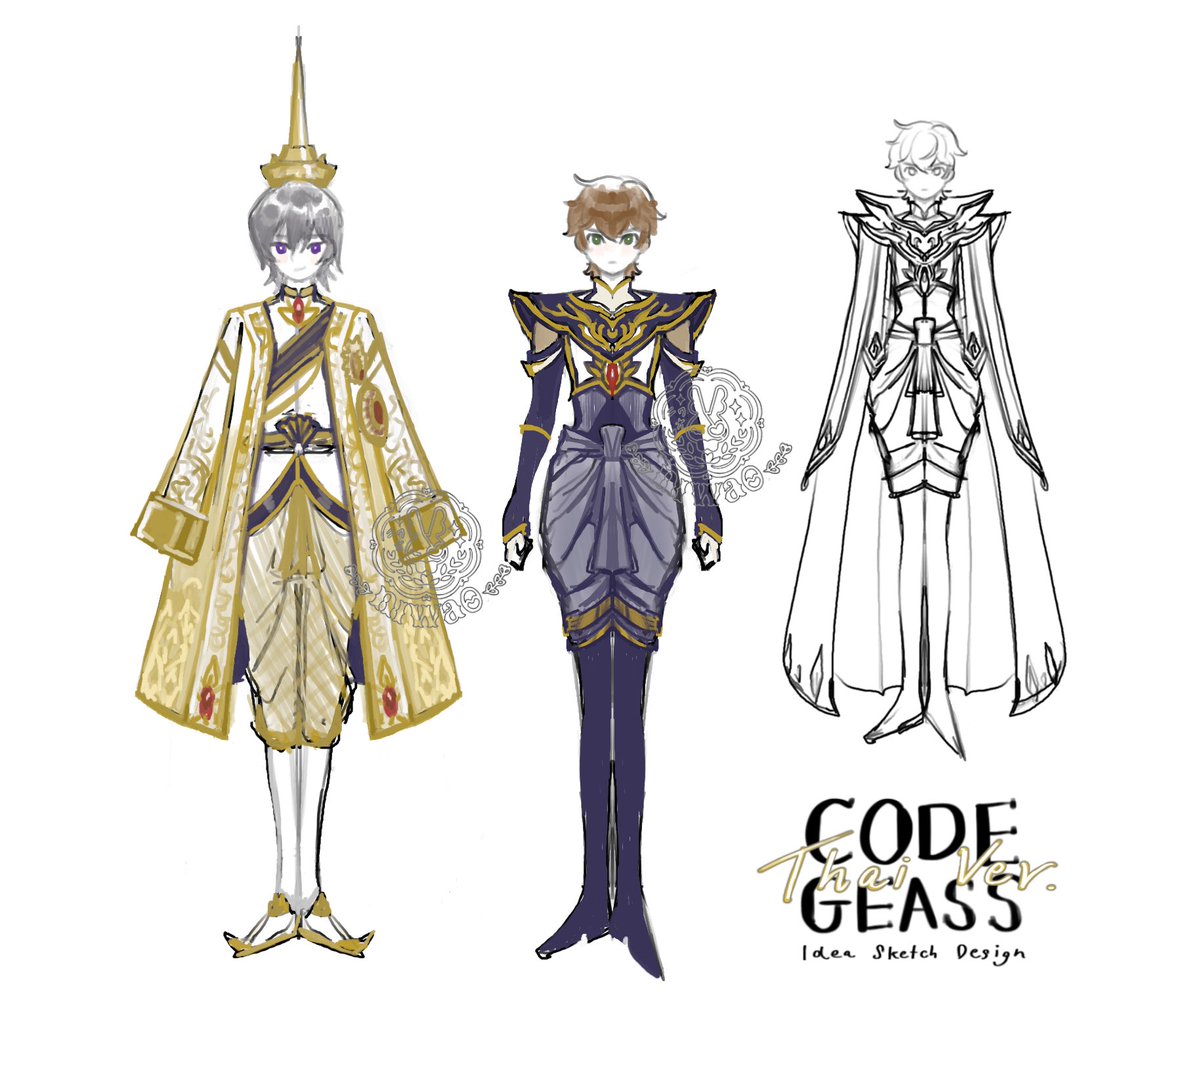 Code geass (in Thai royal costume style) ลองสเก็ตไอเดียคร่าวๆดูค่ะ ถ้าเปลี่ยนเซ็ตติ้งในเรื่องเป็นสยามประเทศ🥹 #โค้ดกีอัส